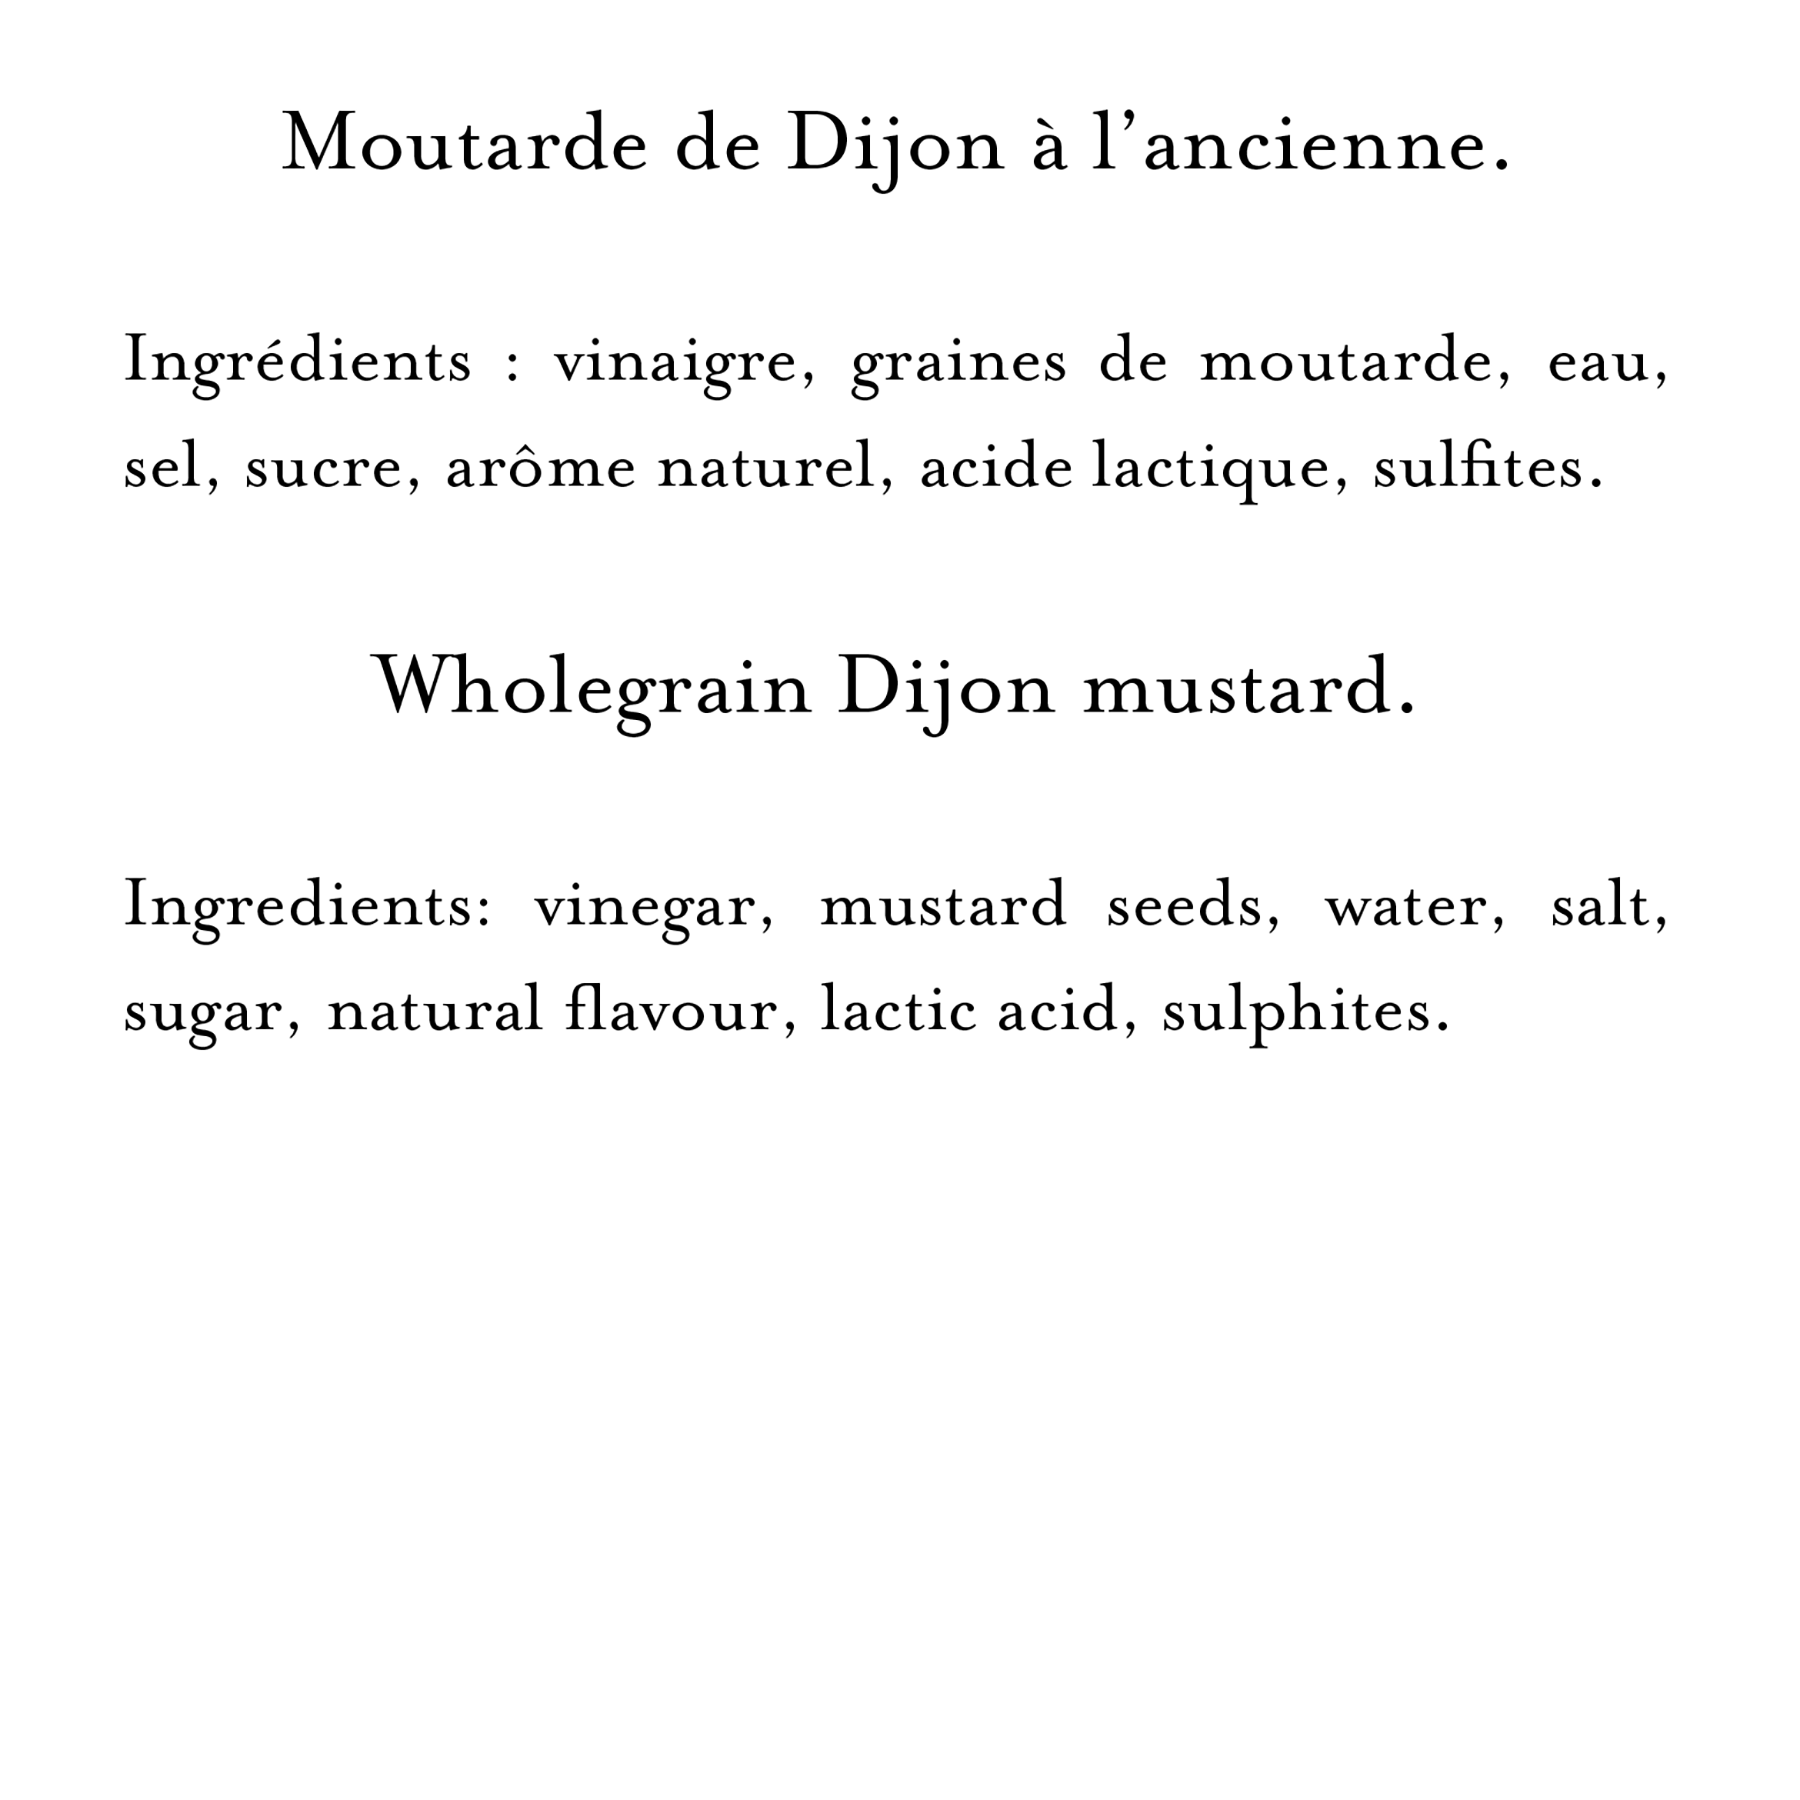 Ingredients (27)